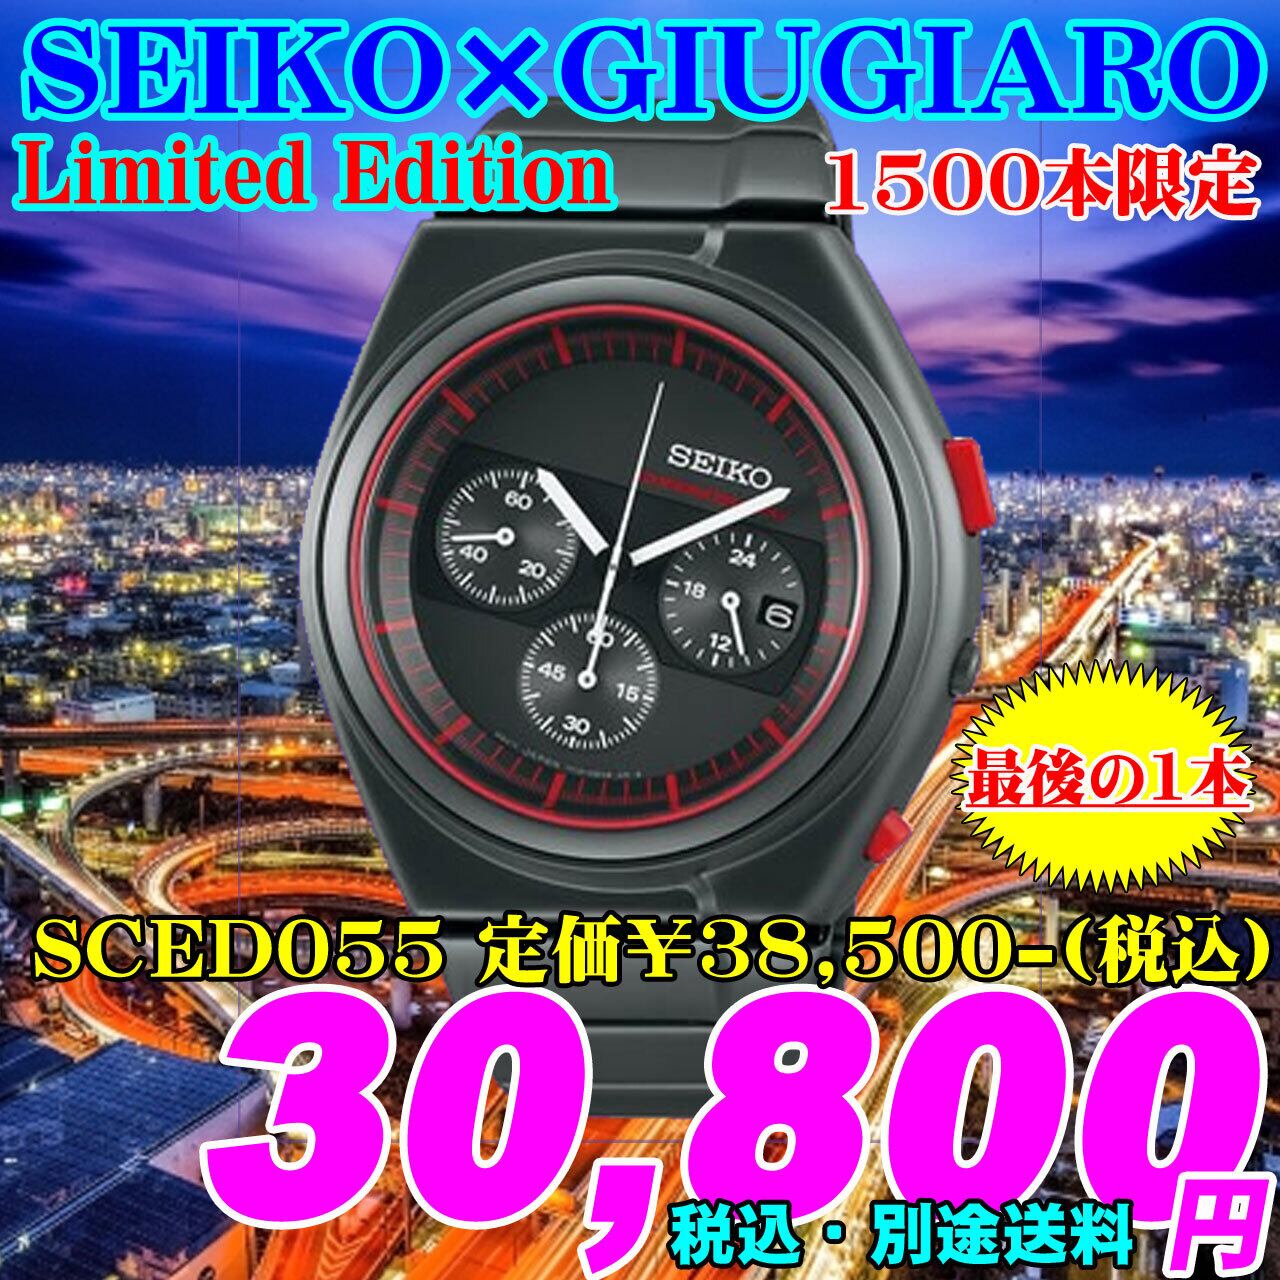 とストップ】 SEIKO - 限定品 セイコー × ジウジアーロ 1500本限定